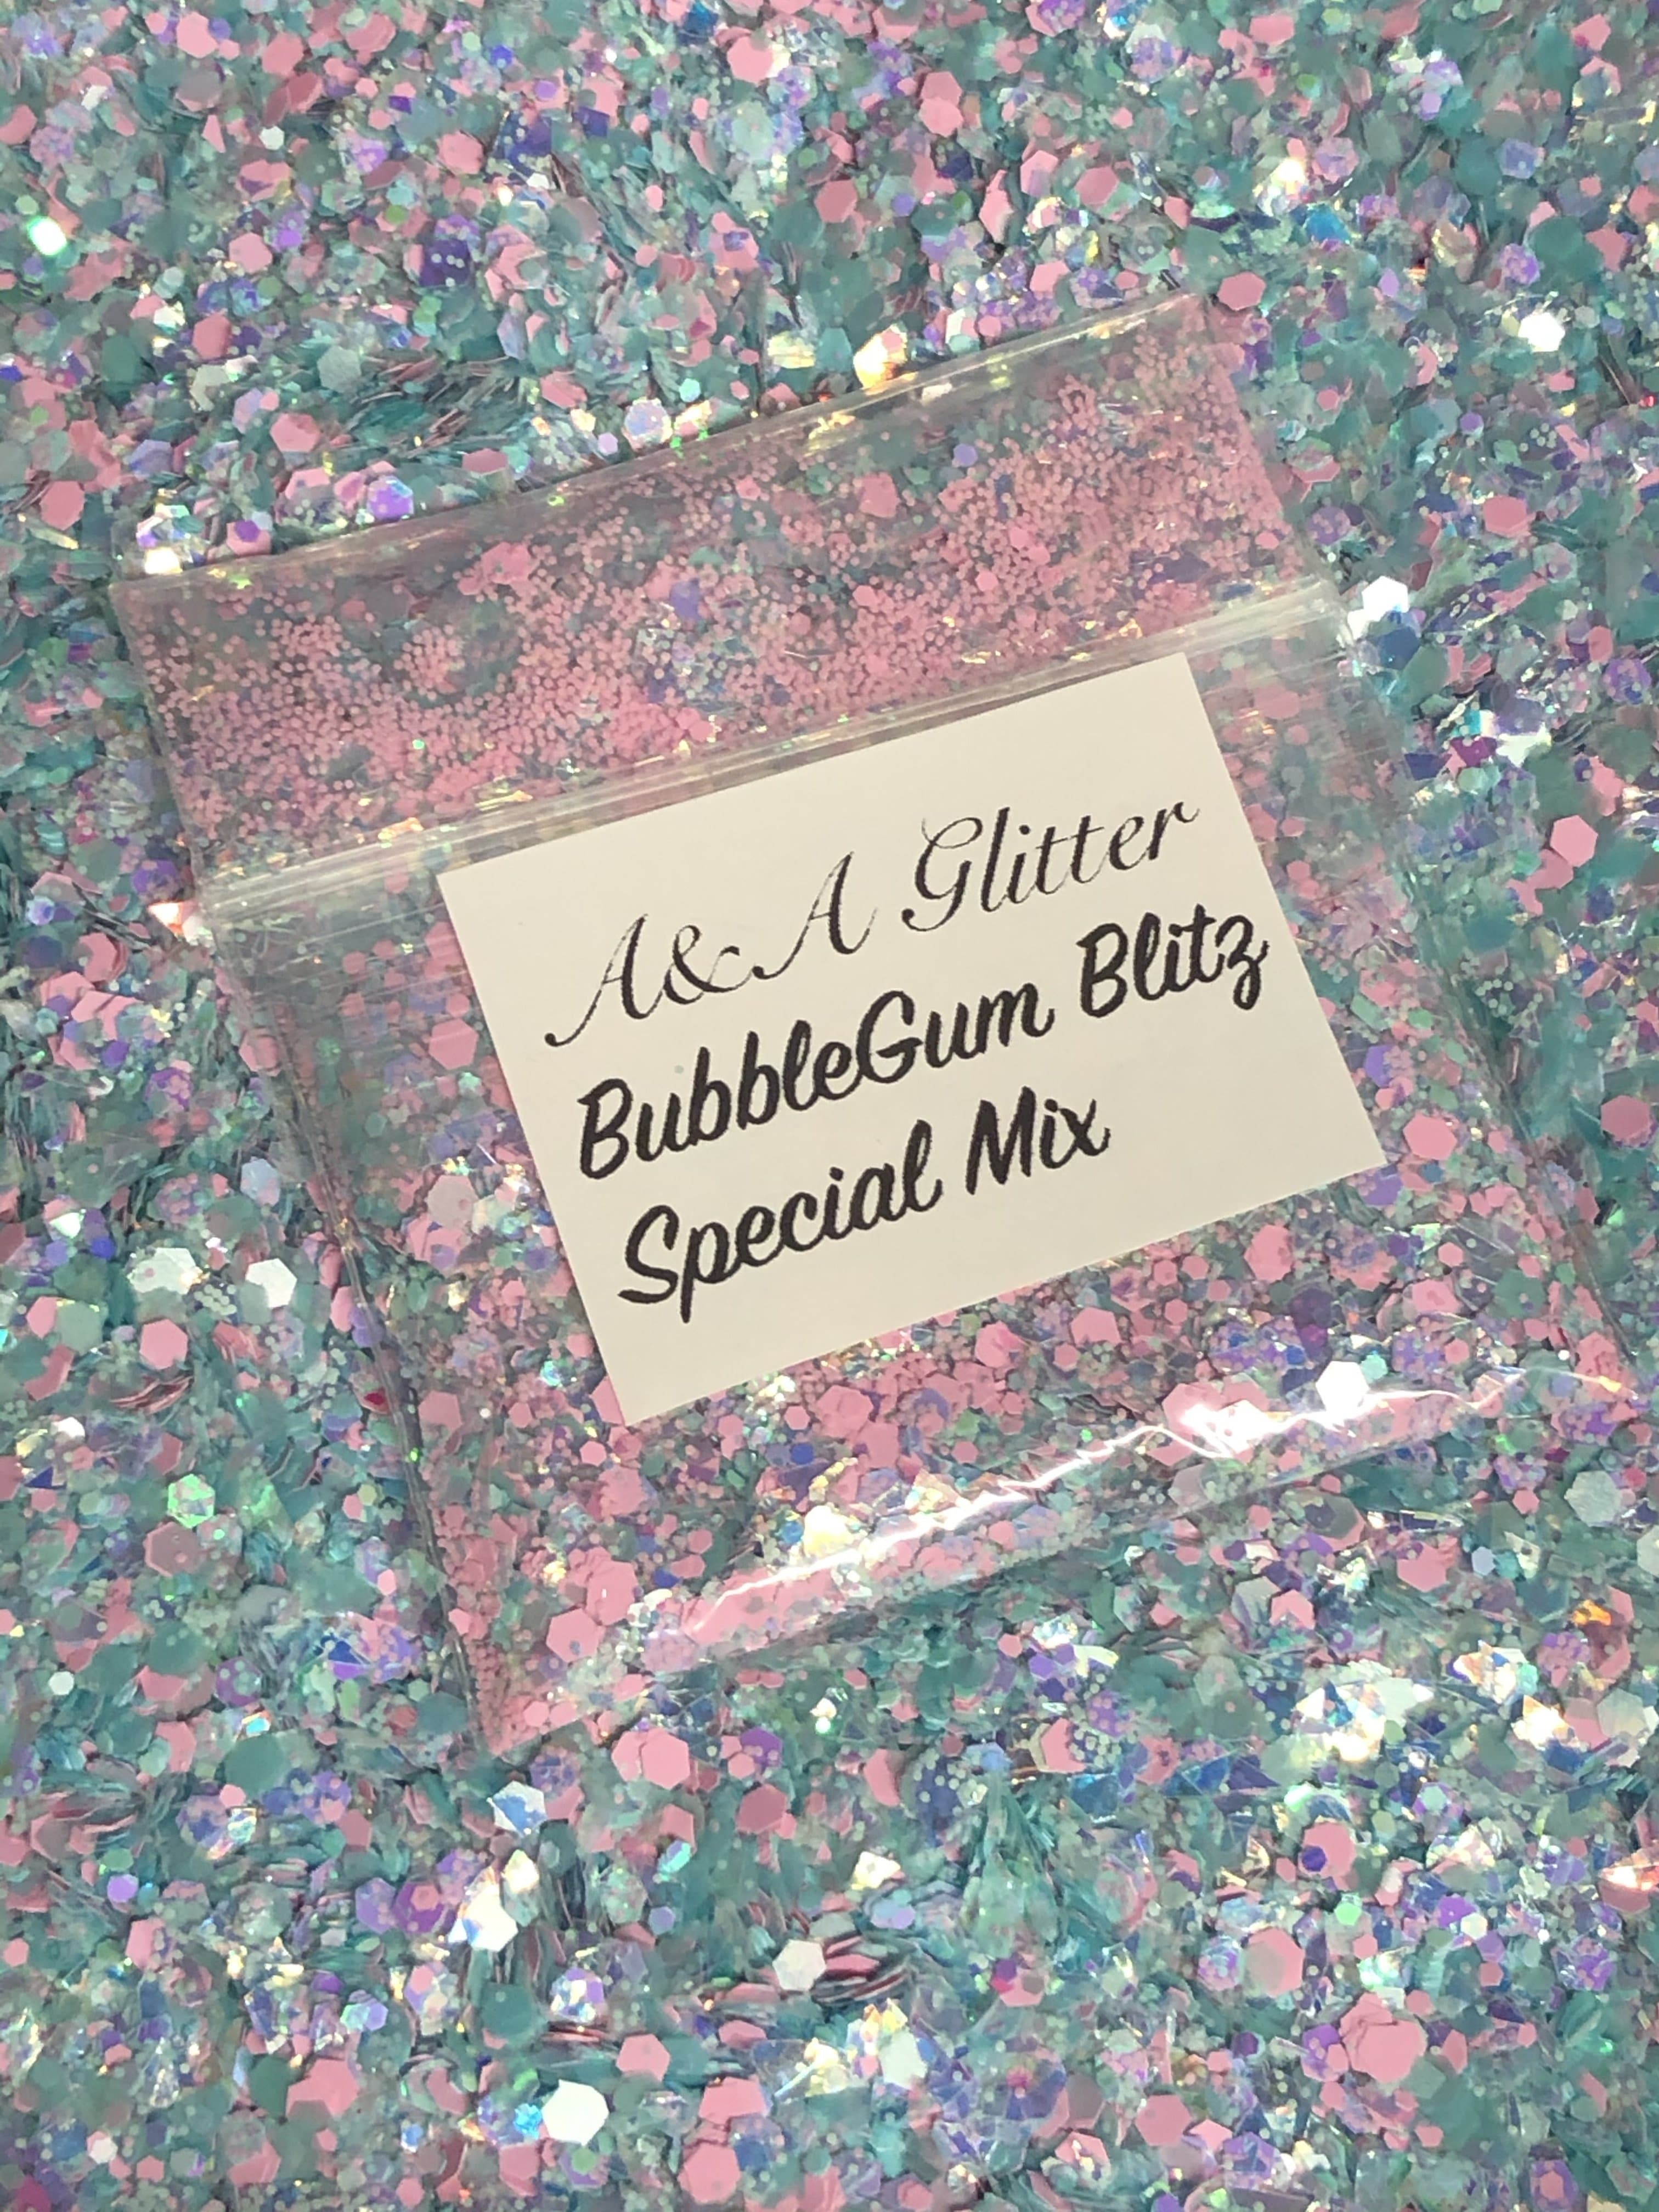 Bubblegum Blitz - Special Mix